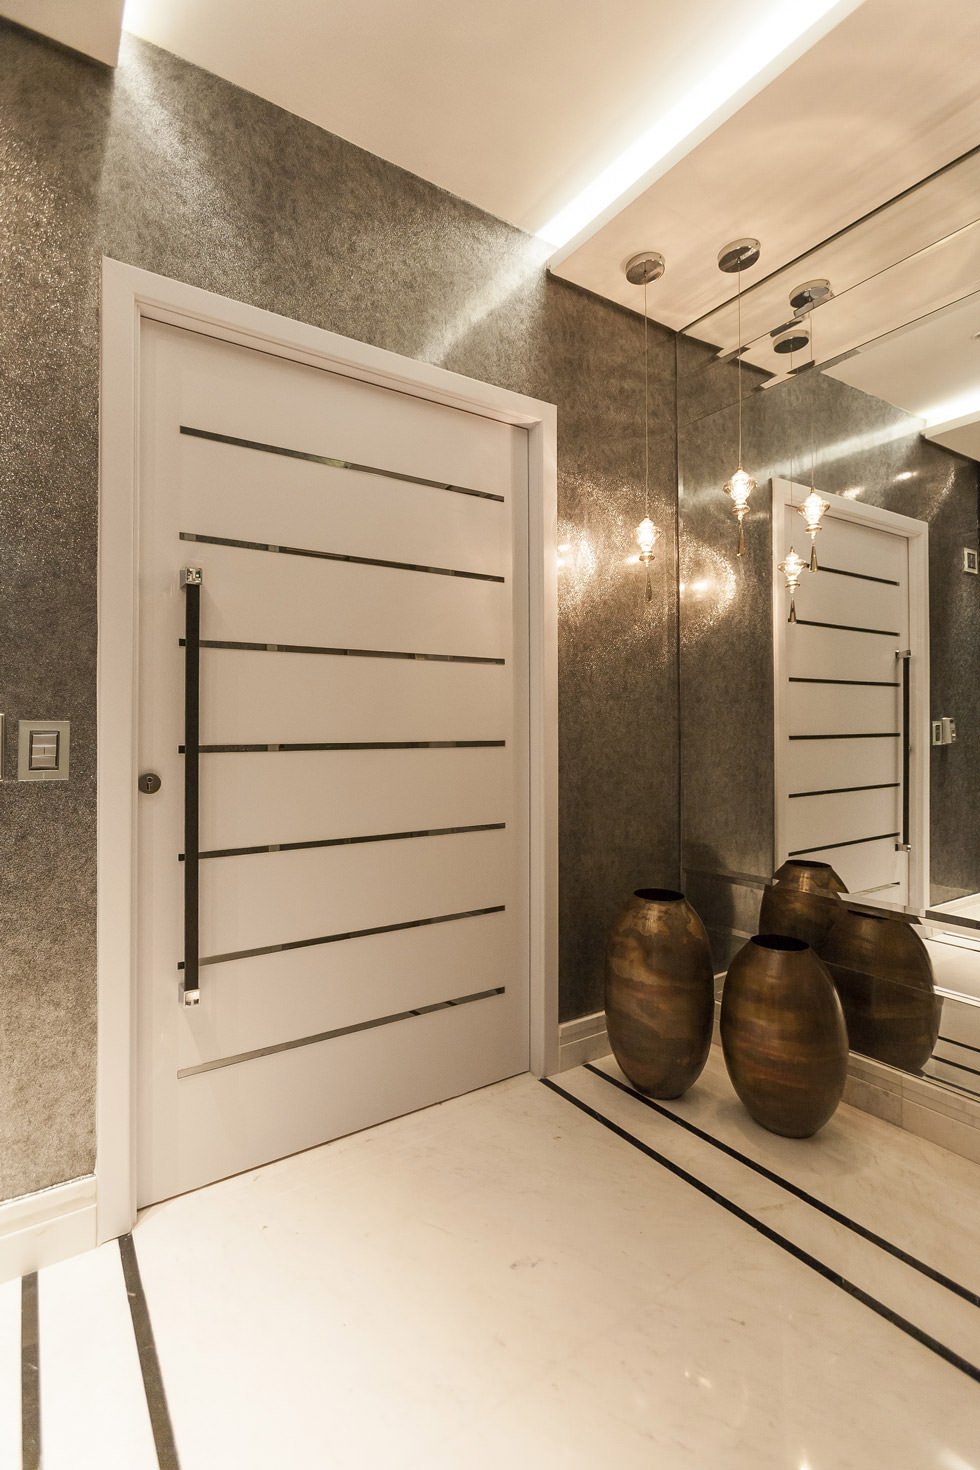 Immagine ingresso casa con porta blindata stile minimal moderno, abbinamento laminato bianco opaco e acciaio inox